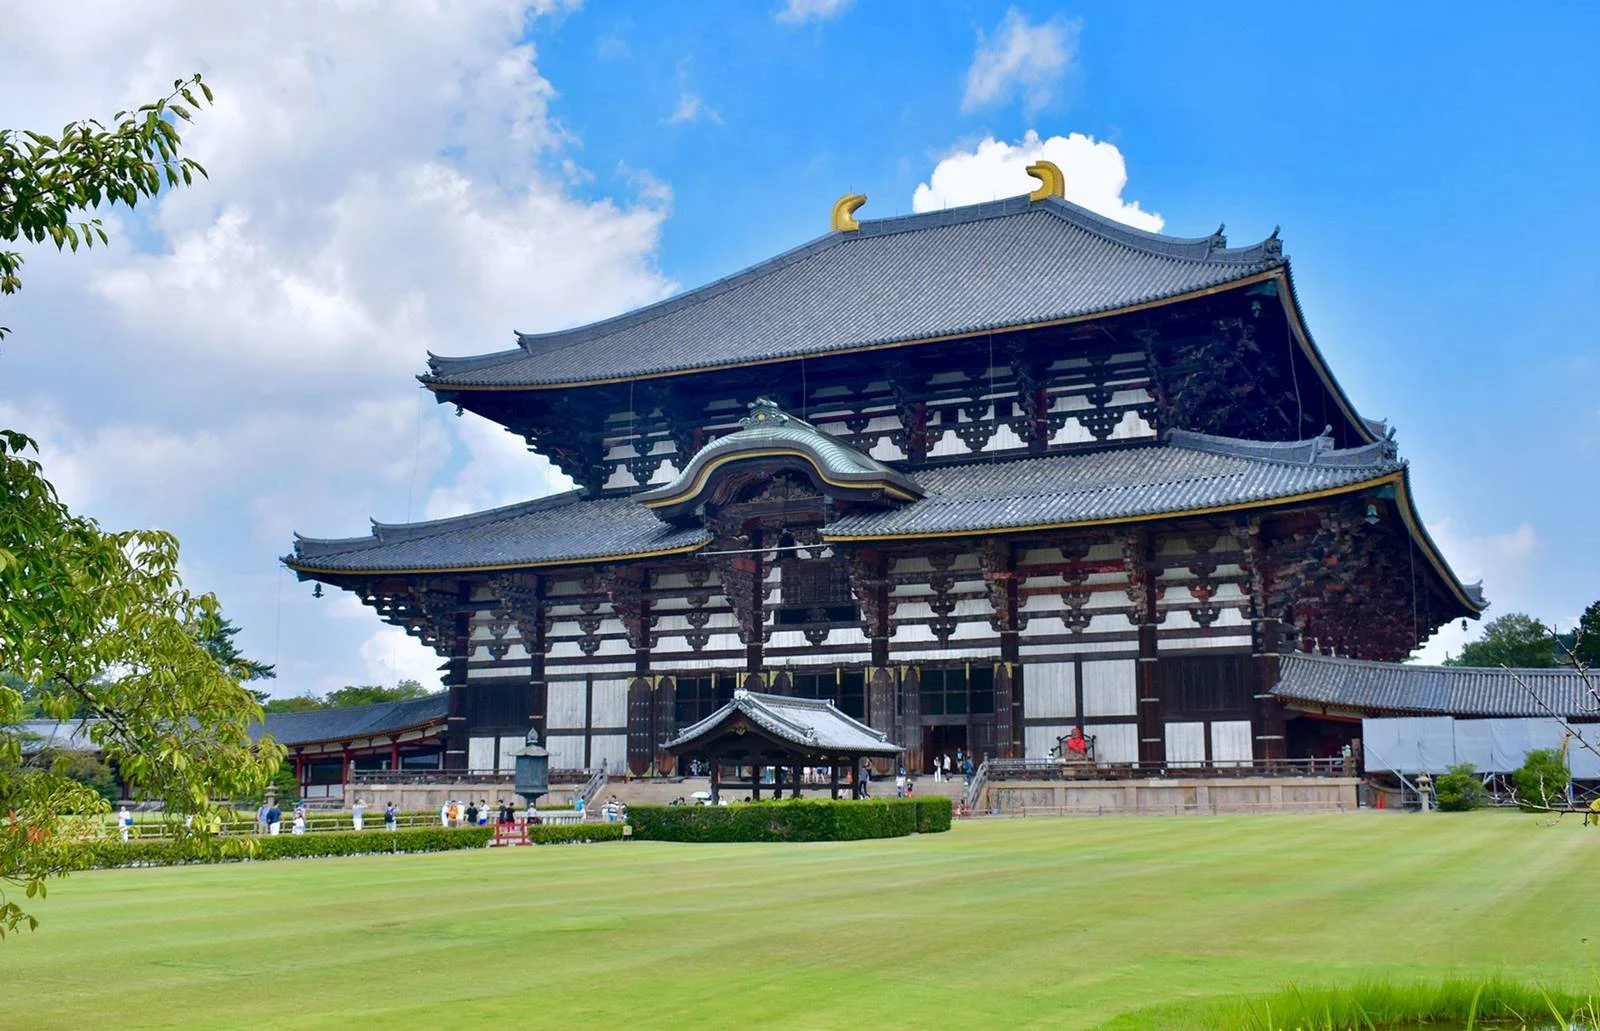 日本-奈良-奈良景點-推薦-東大寺-Todaiji Temple-市區-自由行-奈良必去-奈良一日遊-旅遊-觀光-Nara-Tourist-Attraction